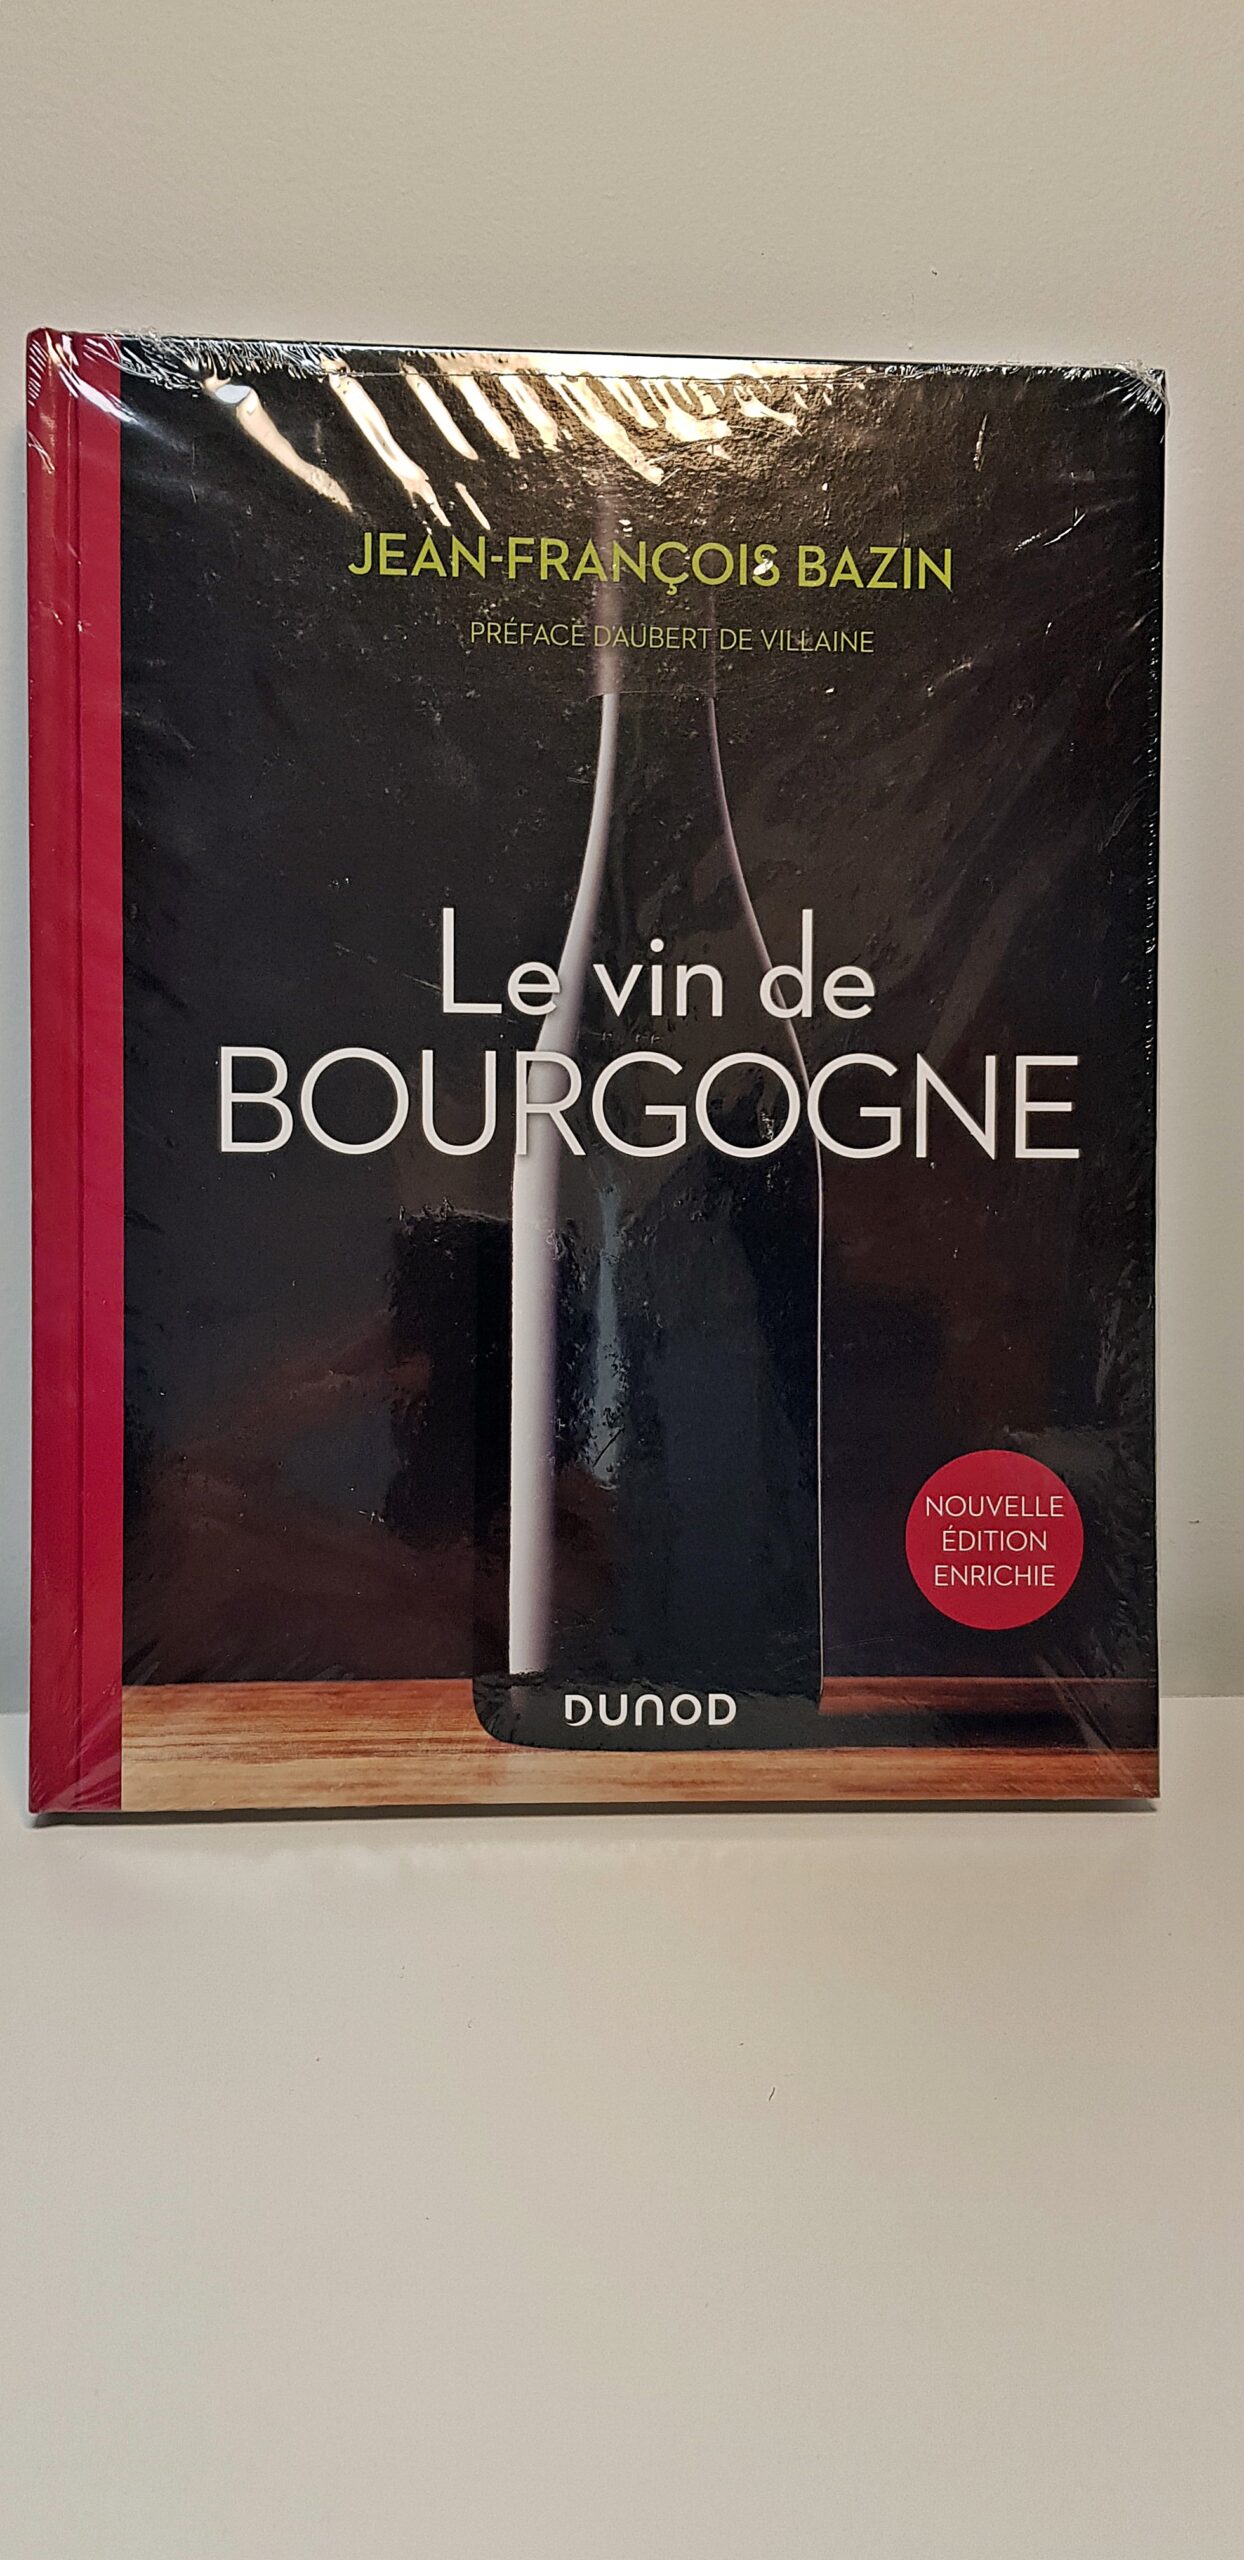 Livre “Le vin de Bourgogne” de Jean-François Bazin